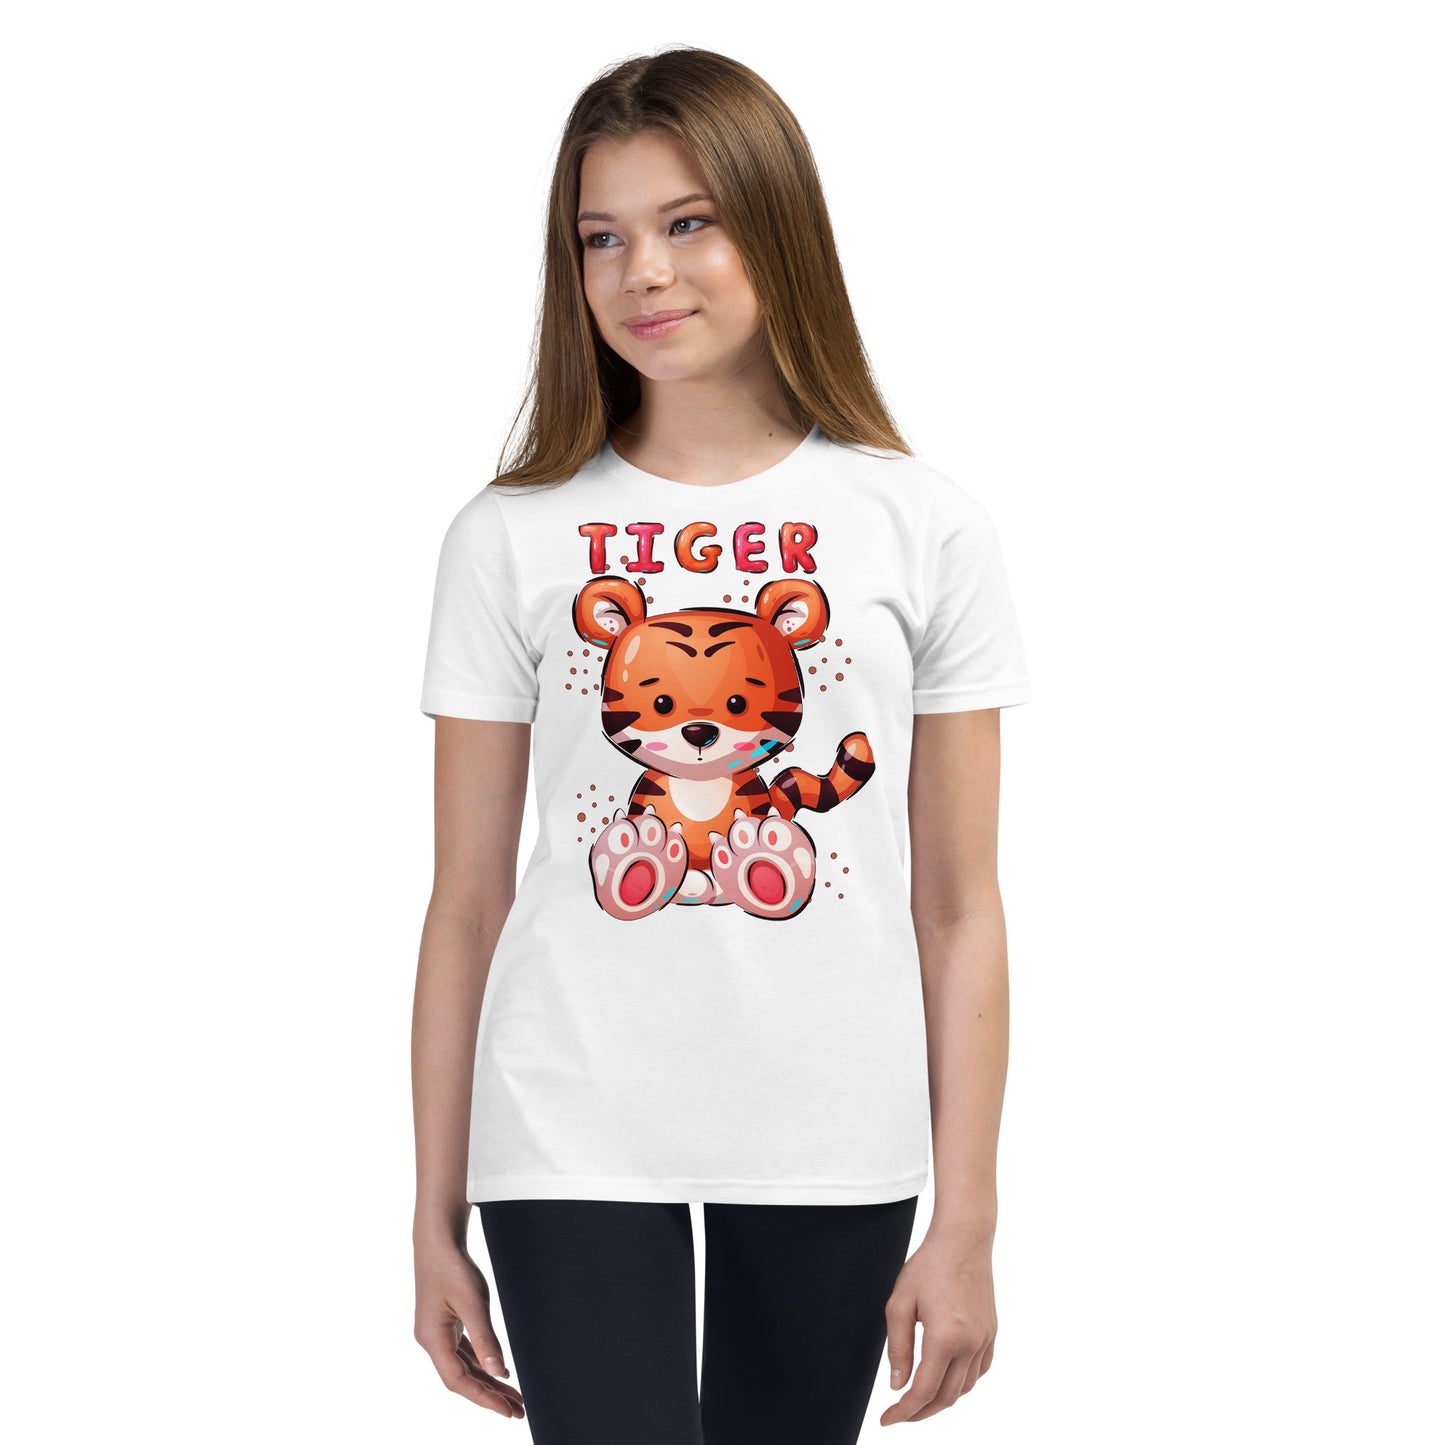 Cute Tiger T-shirt, No. 0388